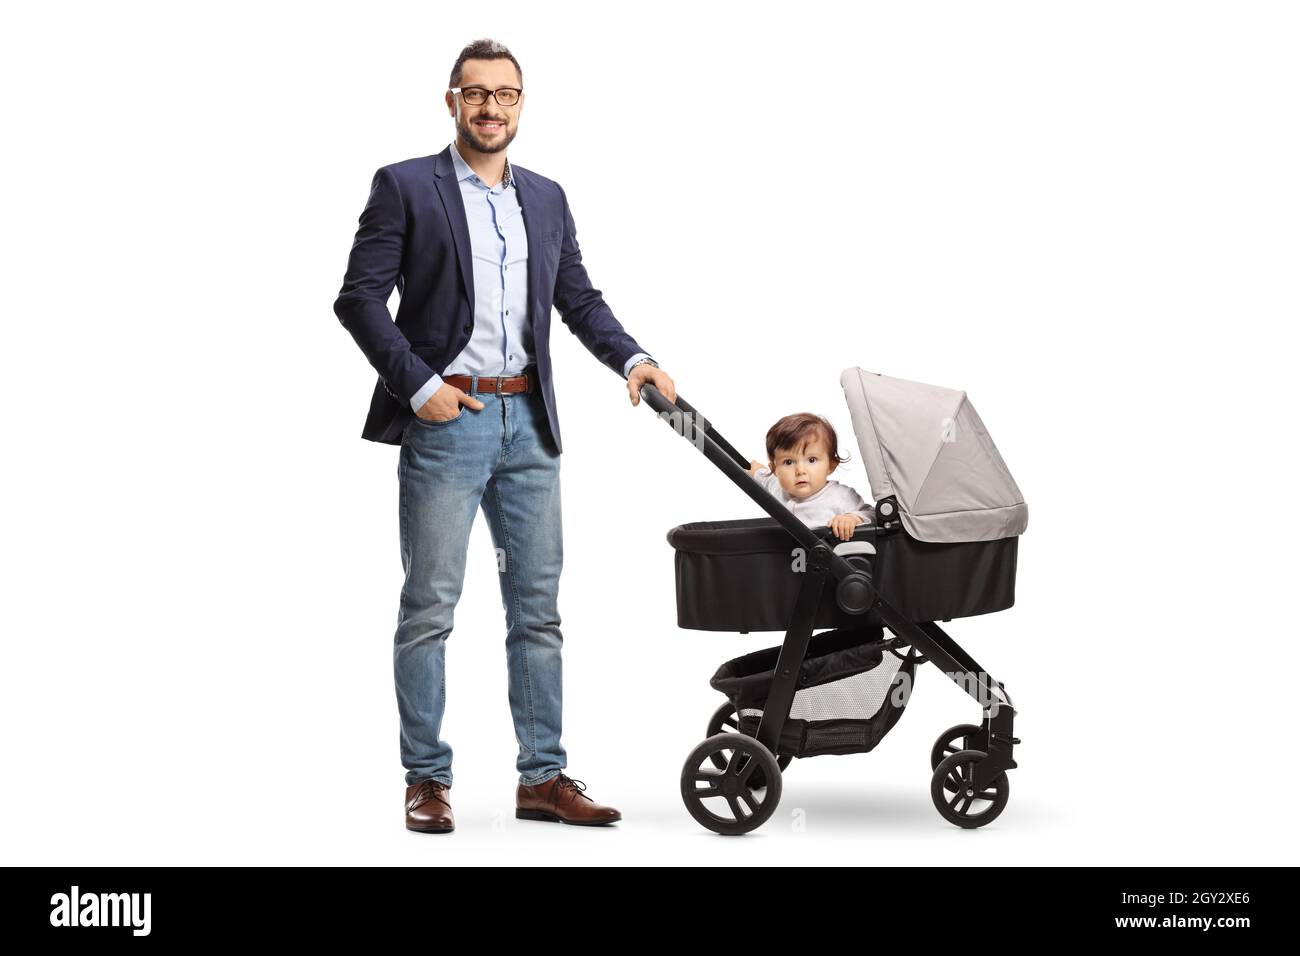 Prise de vue en longueur d'un père debout avec un bébé dans un chariot isolé sur fond blanc Banque D'Images